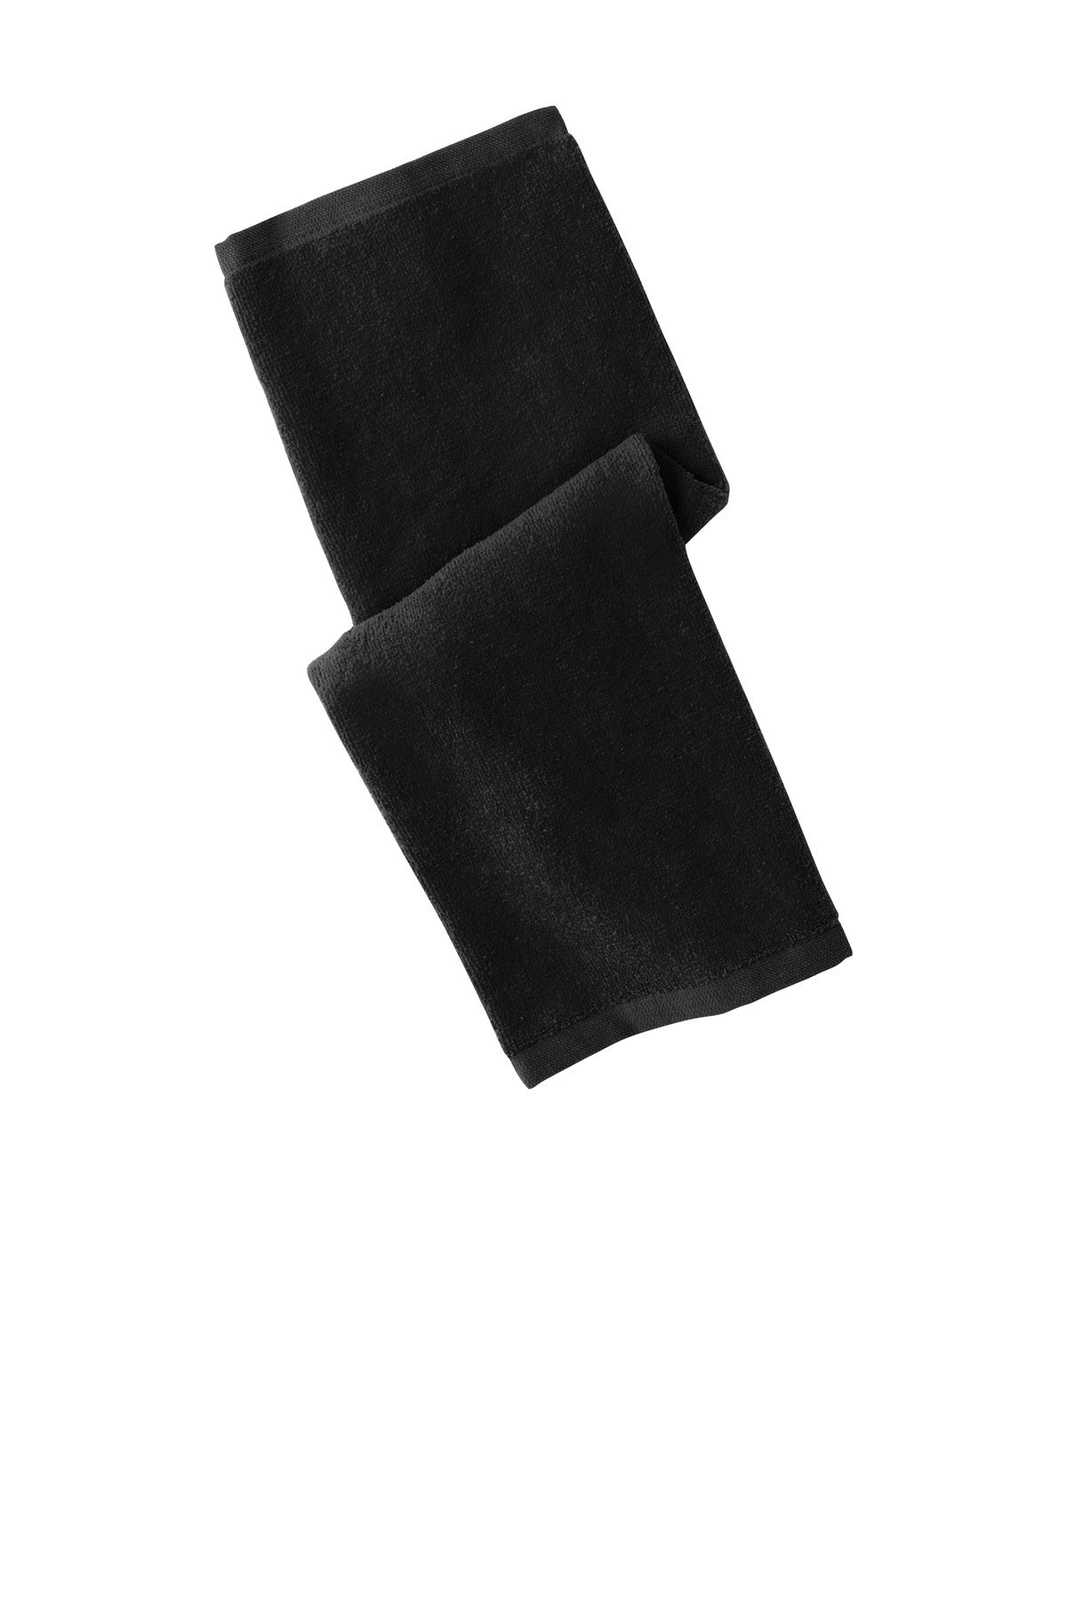 Port Authority PT390 Hemmed Towel - Black - HIT a Double - 1